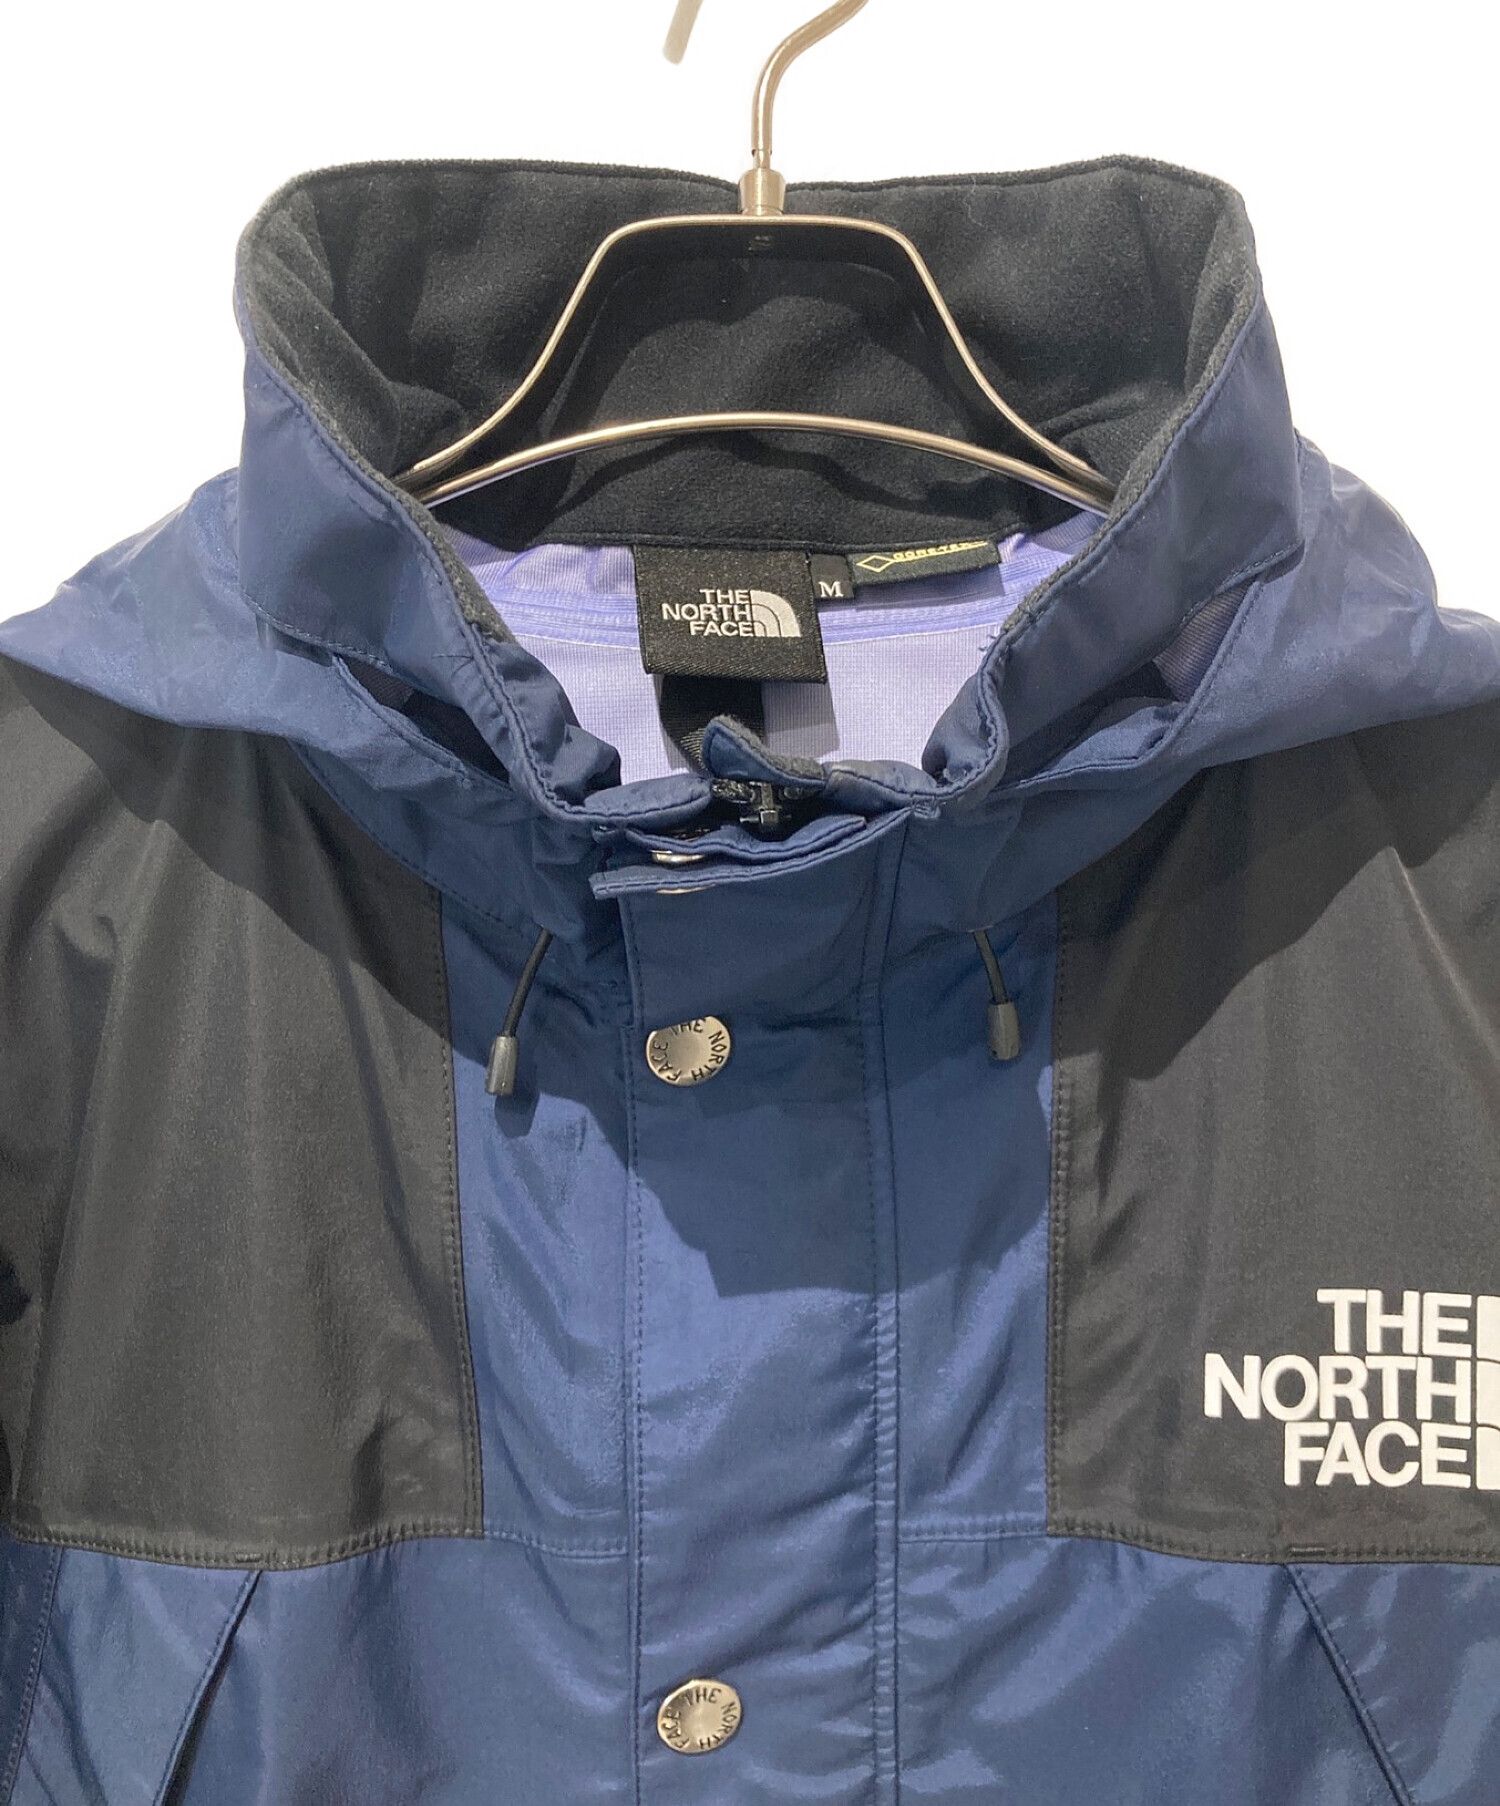 THE NORTH FACE (ザ ノース フェイス) マウンテンレインテックスジャケット ブルー×ブラック サイズ:M